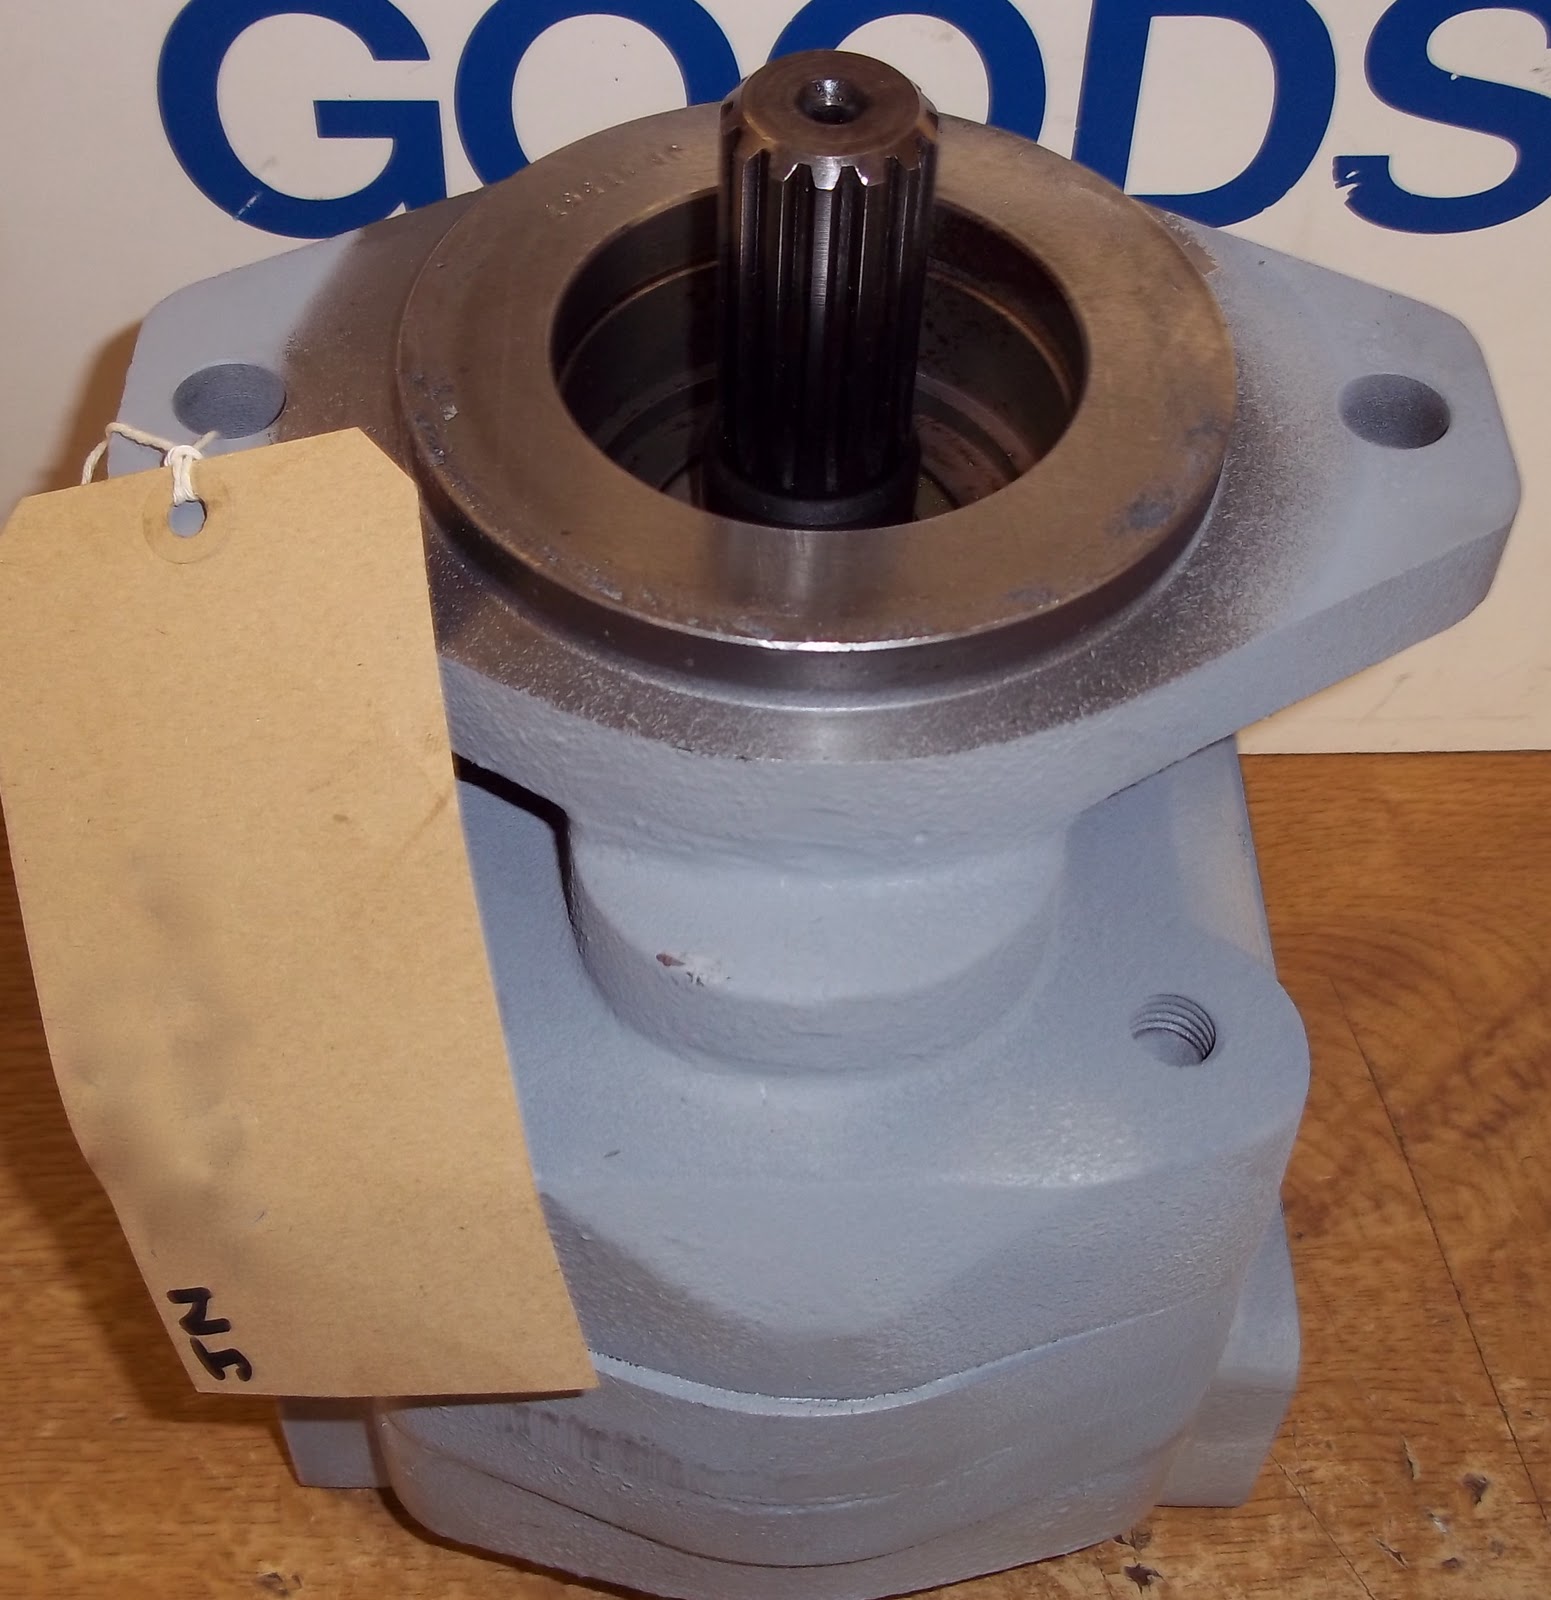 P \u0026 R Hydraulics Ltd - Repairs: Commercial Hydraulic Pump Part No 3227567031 - assembled